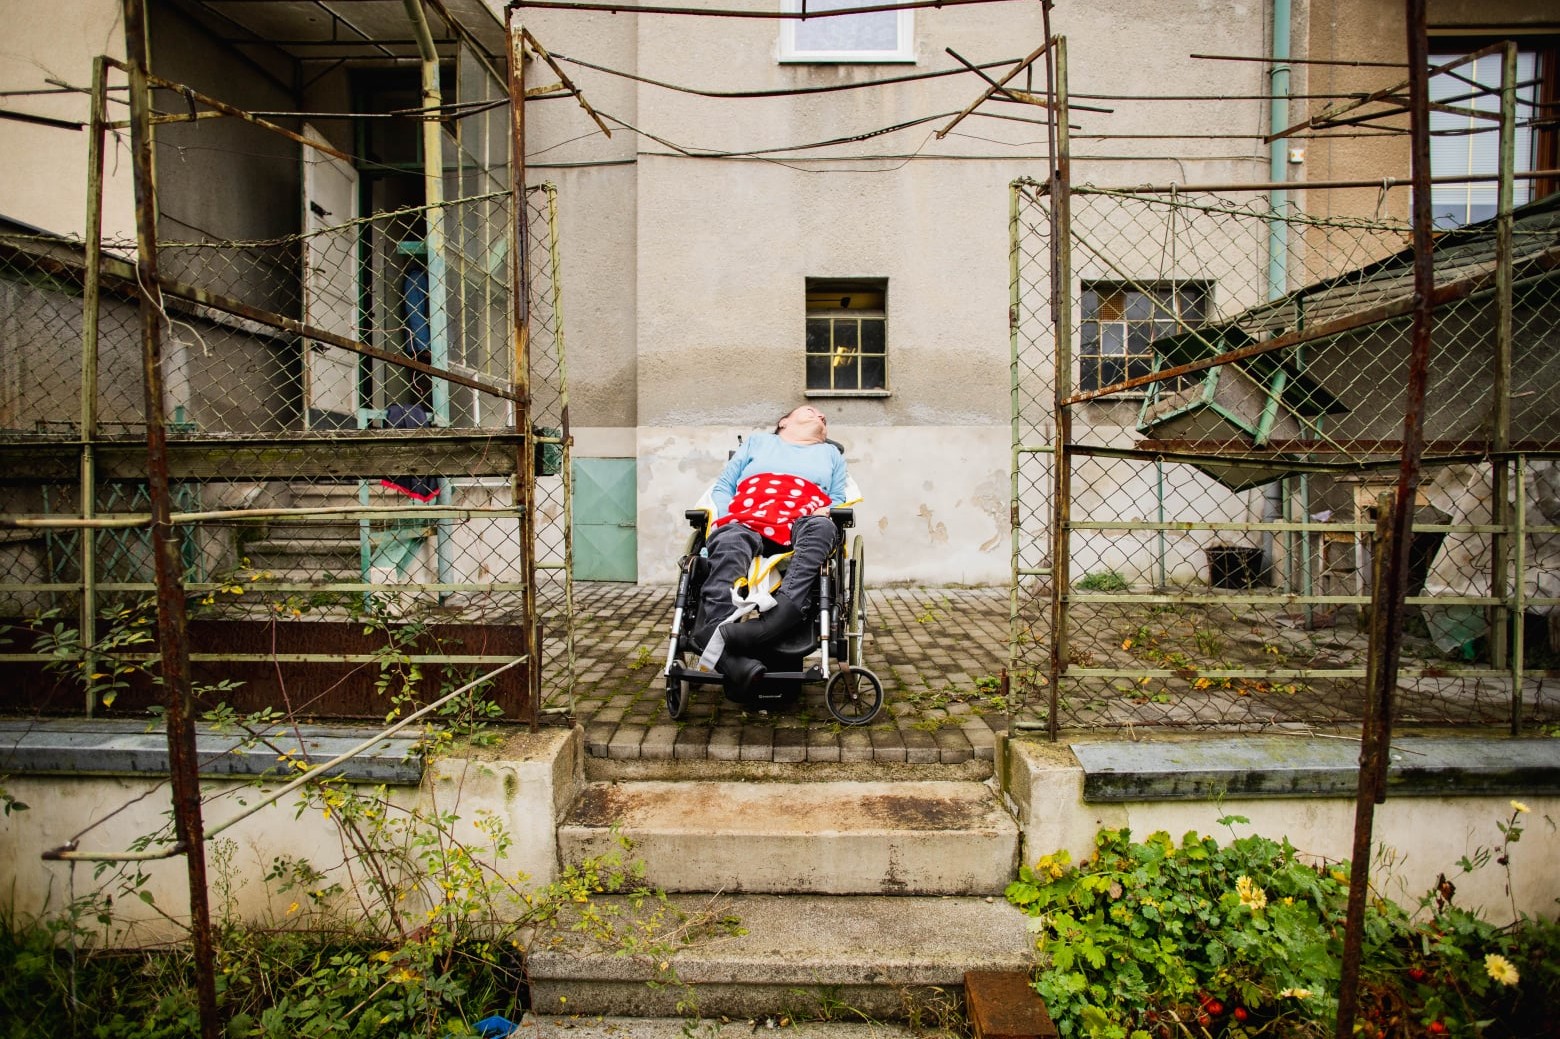 Rodný dům vozíčkářky se promění v chráněné bydlení. Podařilo se nám něco krásného, říká architektka Veronika Jilčíková